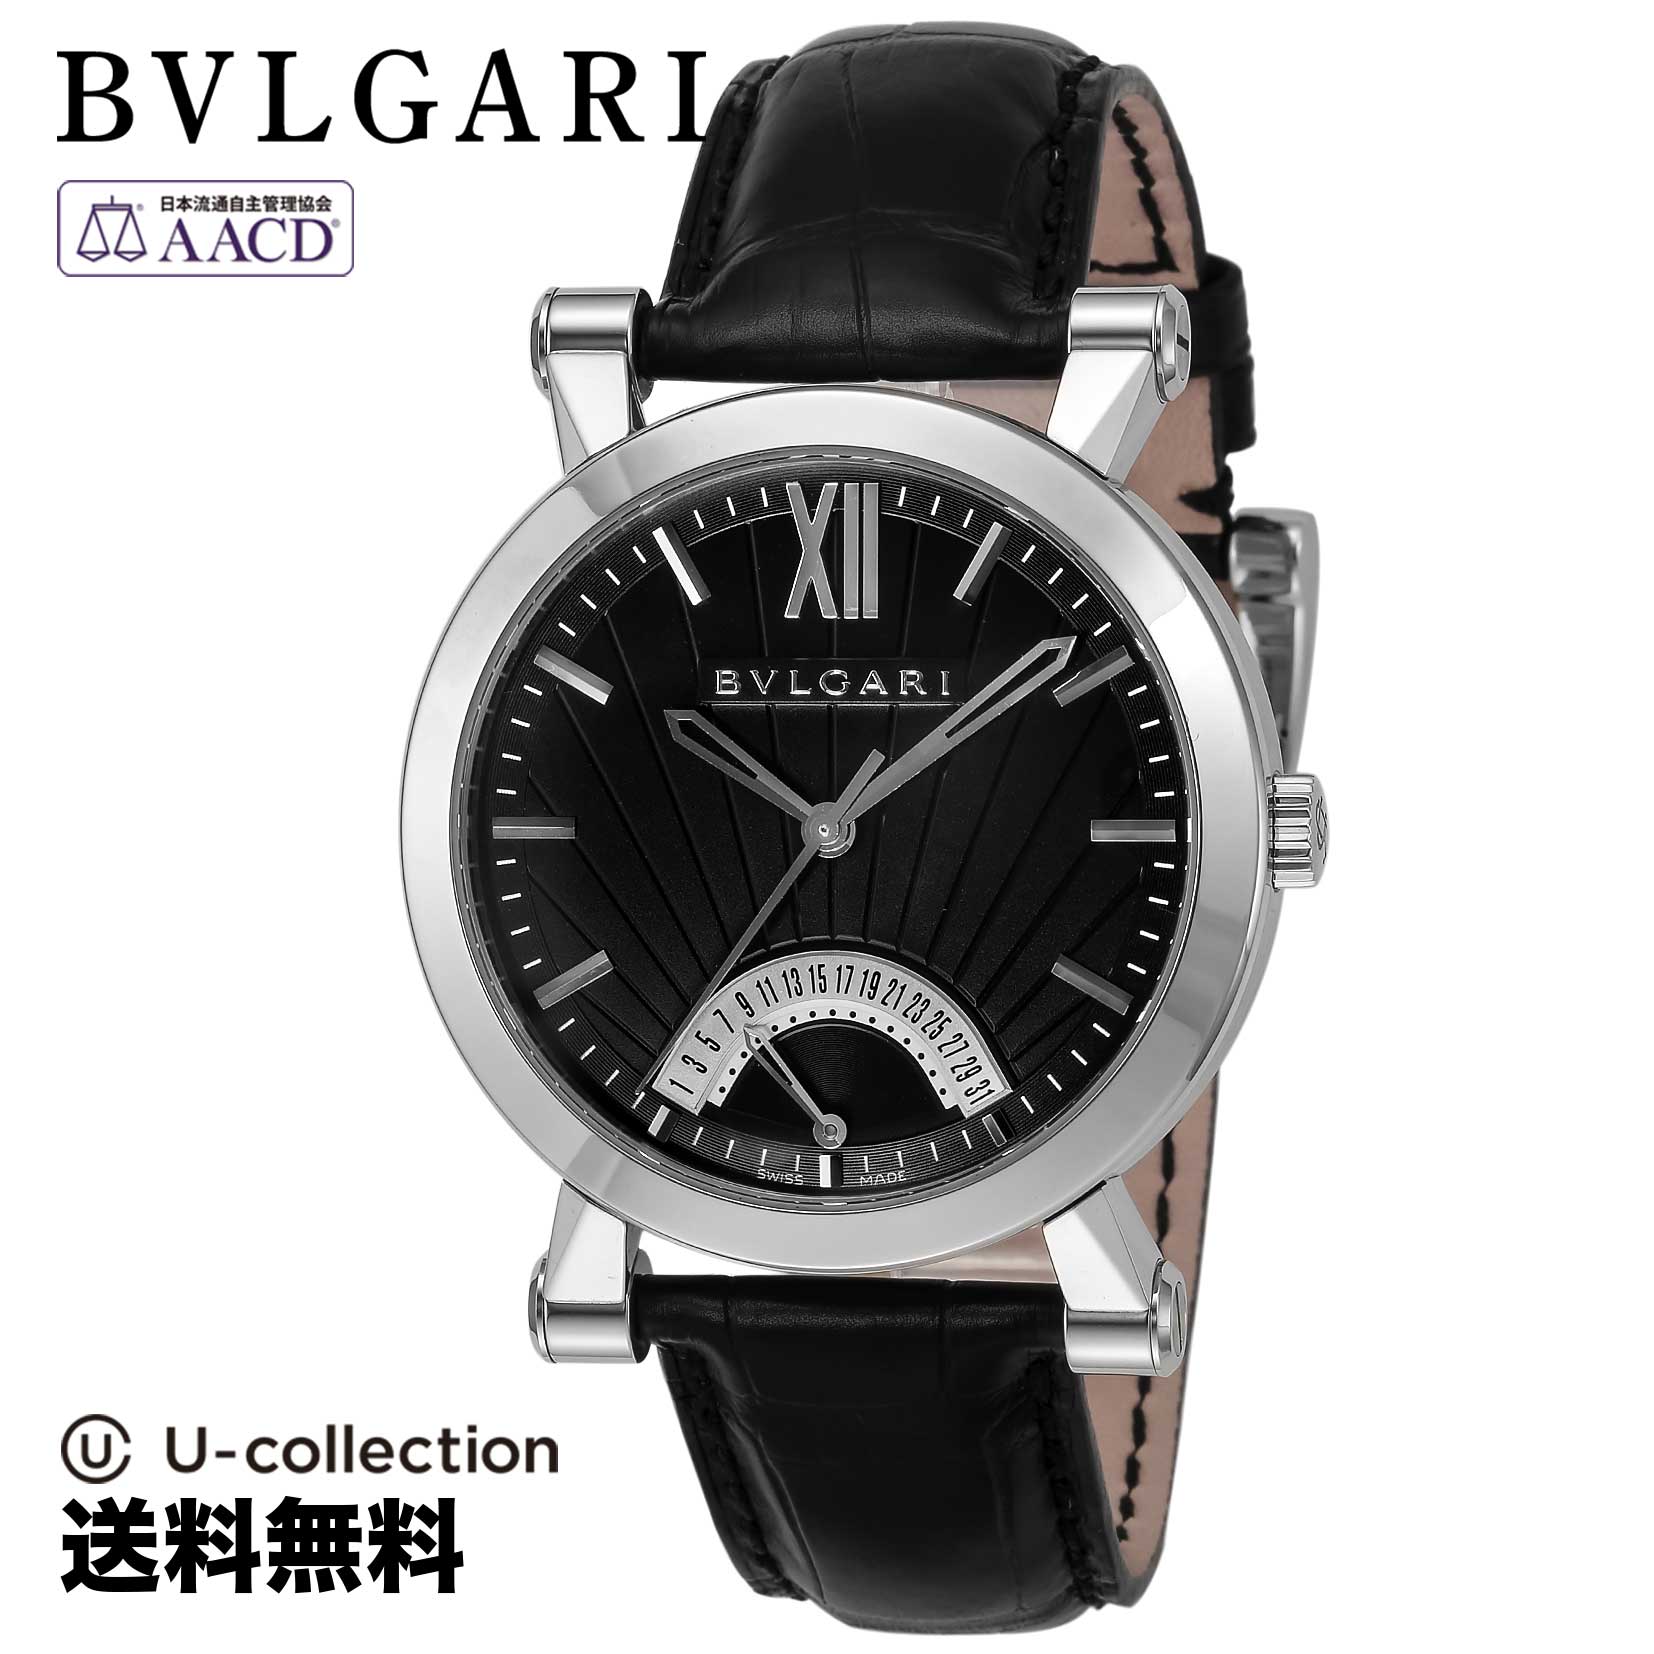 ブルガリ【腕時計】 BVLGARI(ブルガリ) Bvlgari Bvlgari / ブルガリブルガリ メンズ ブラック 自動巻 SB42BSLDR 時計 ブランド